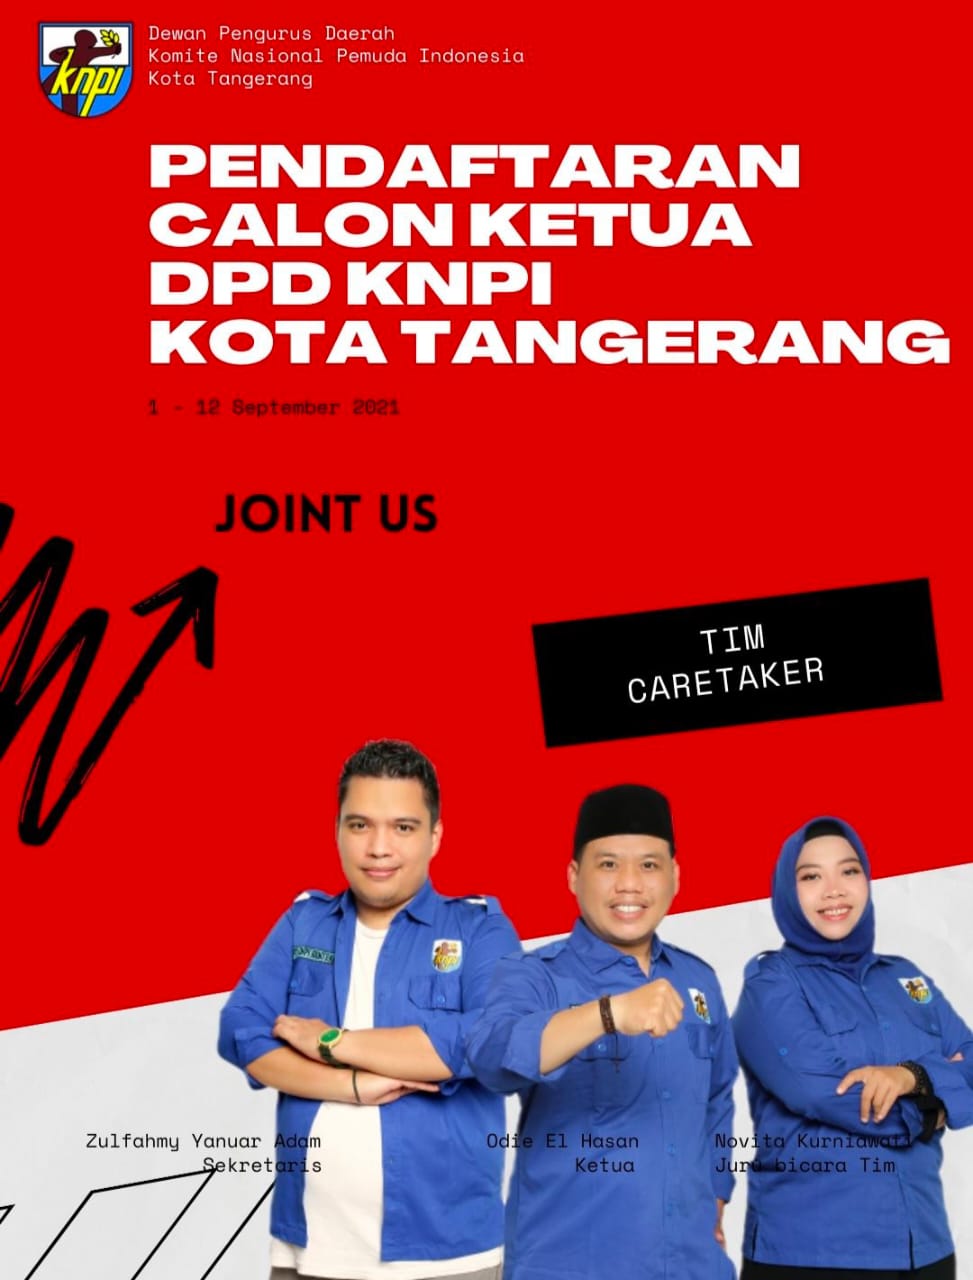 Gambar Pendaftaran Calon Ketua DPD KNPI Kota Tangerang Dibuka Mulai Hari Ini 35